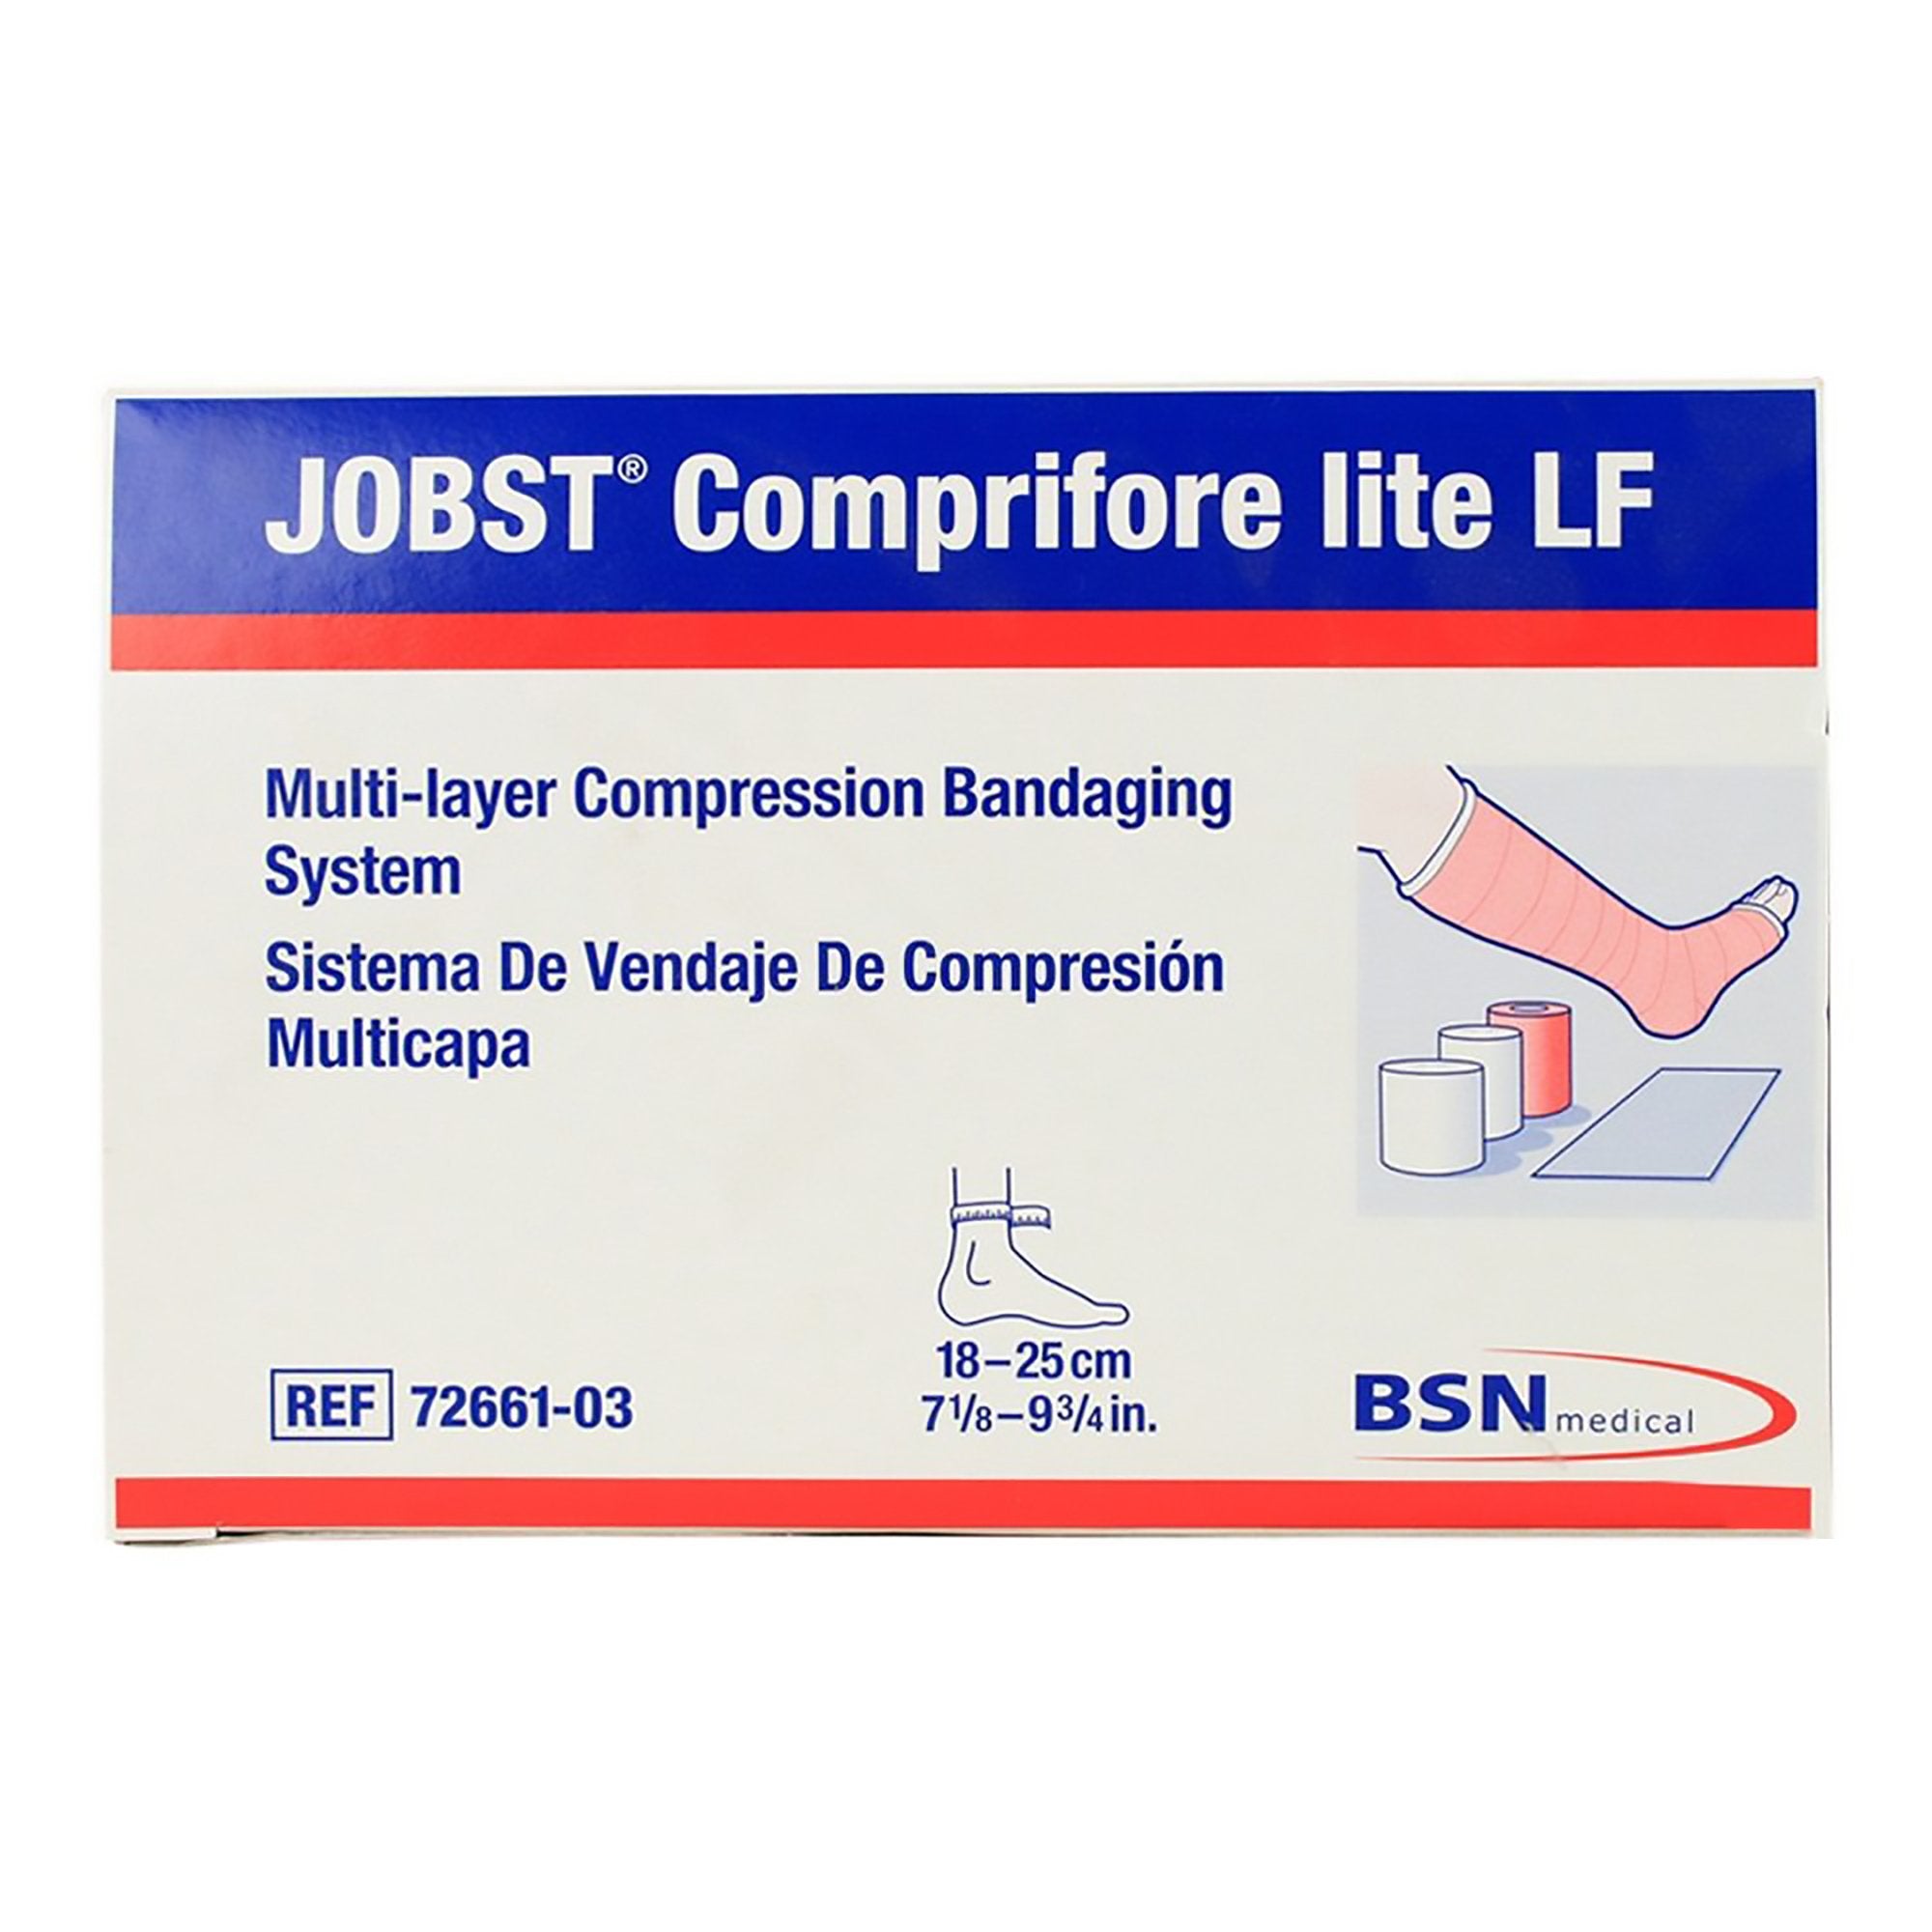 3 Layer Compression Bandage System JOBST® Comprifore® lite LF No Closure Tan / White NonSterile 40 mmHg